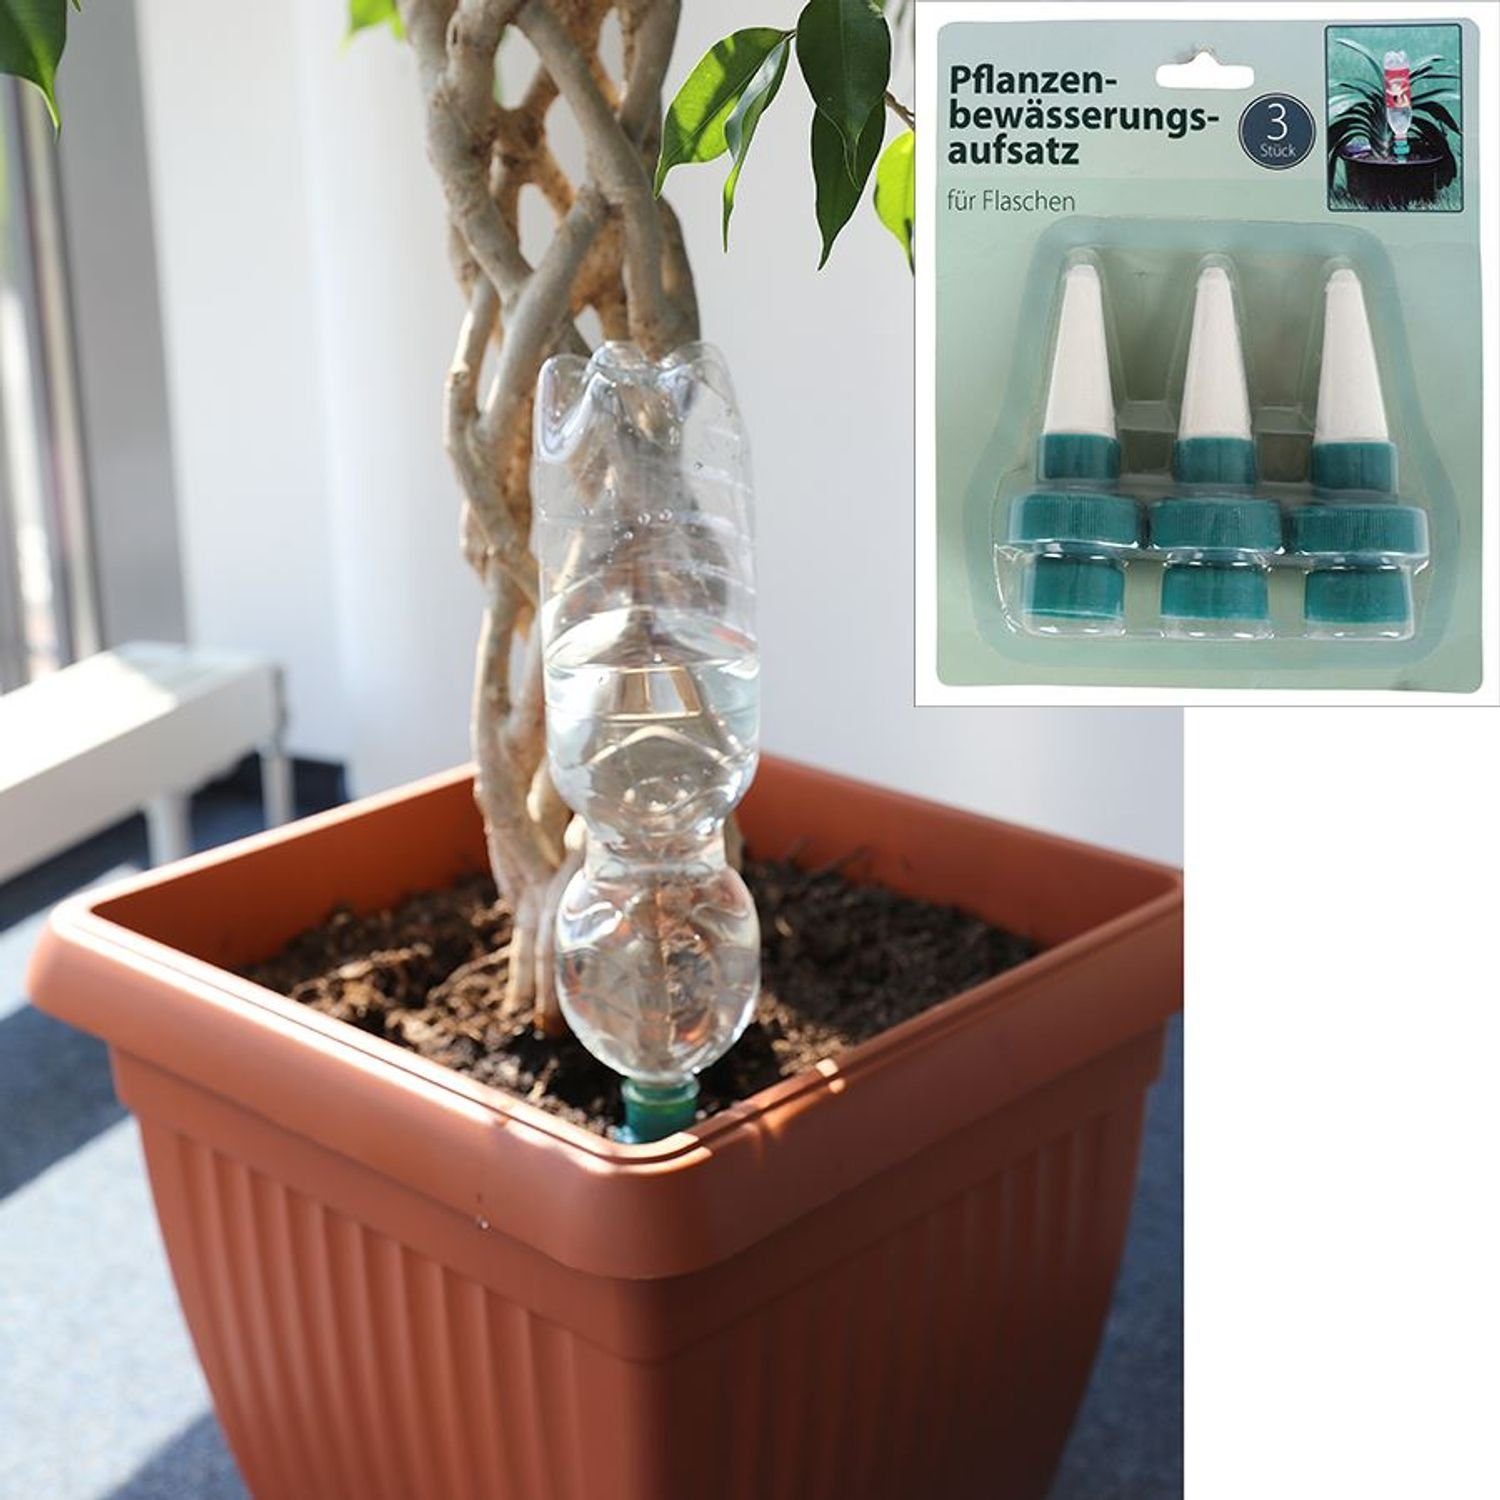 BURI Pflanzkübel Pflanzenbewässerungsaufsatz 3er-Set Blumentopf Wasserspender Bewässeru